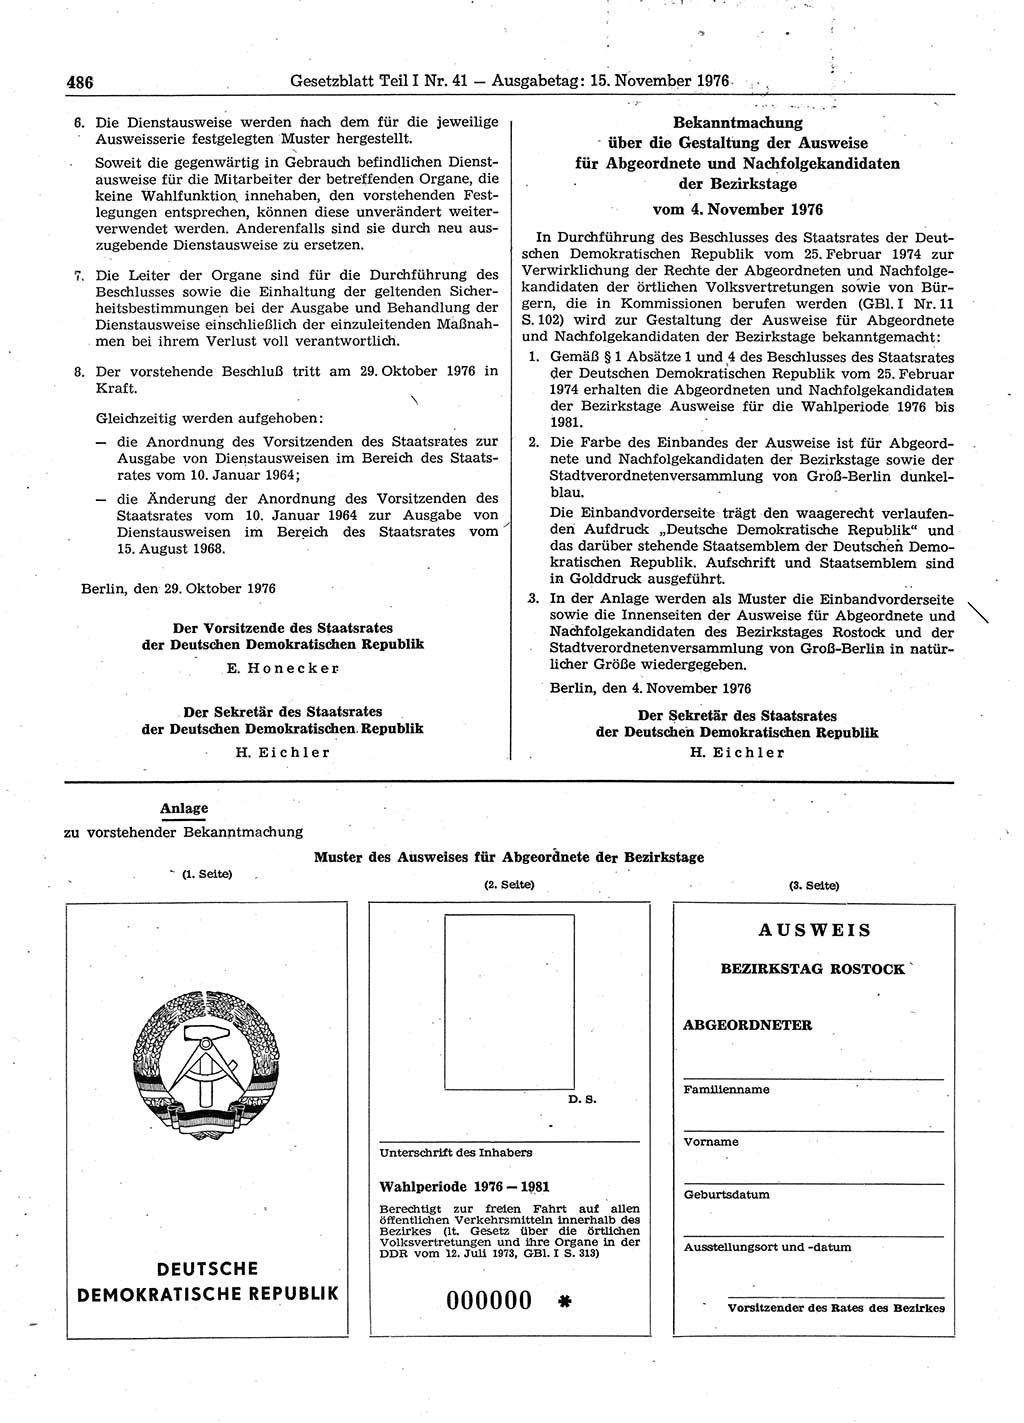 Gesetzblatt (GBl.) der Deutschen Demokratischen Republik (DDR) Teil Ⅰ 1976, Seite 486 (GBl. DDR Ⅰ 1976, S. 486)